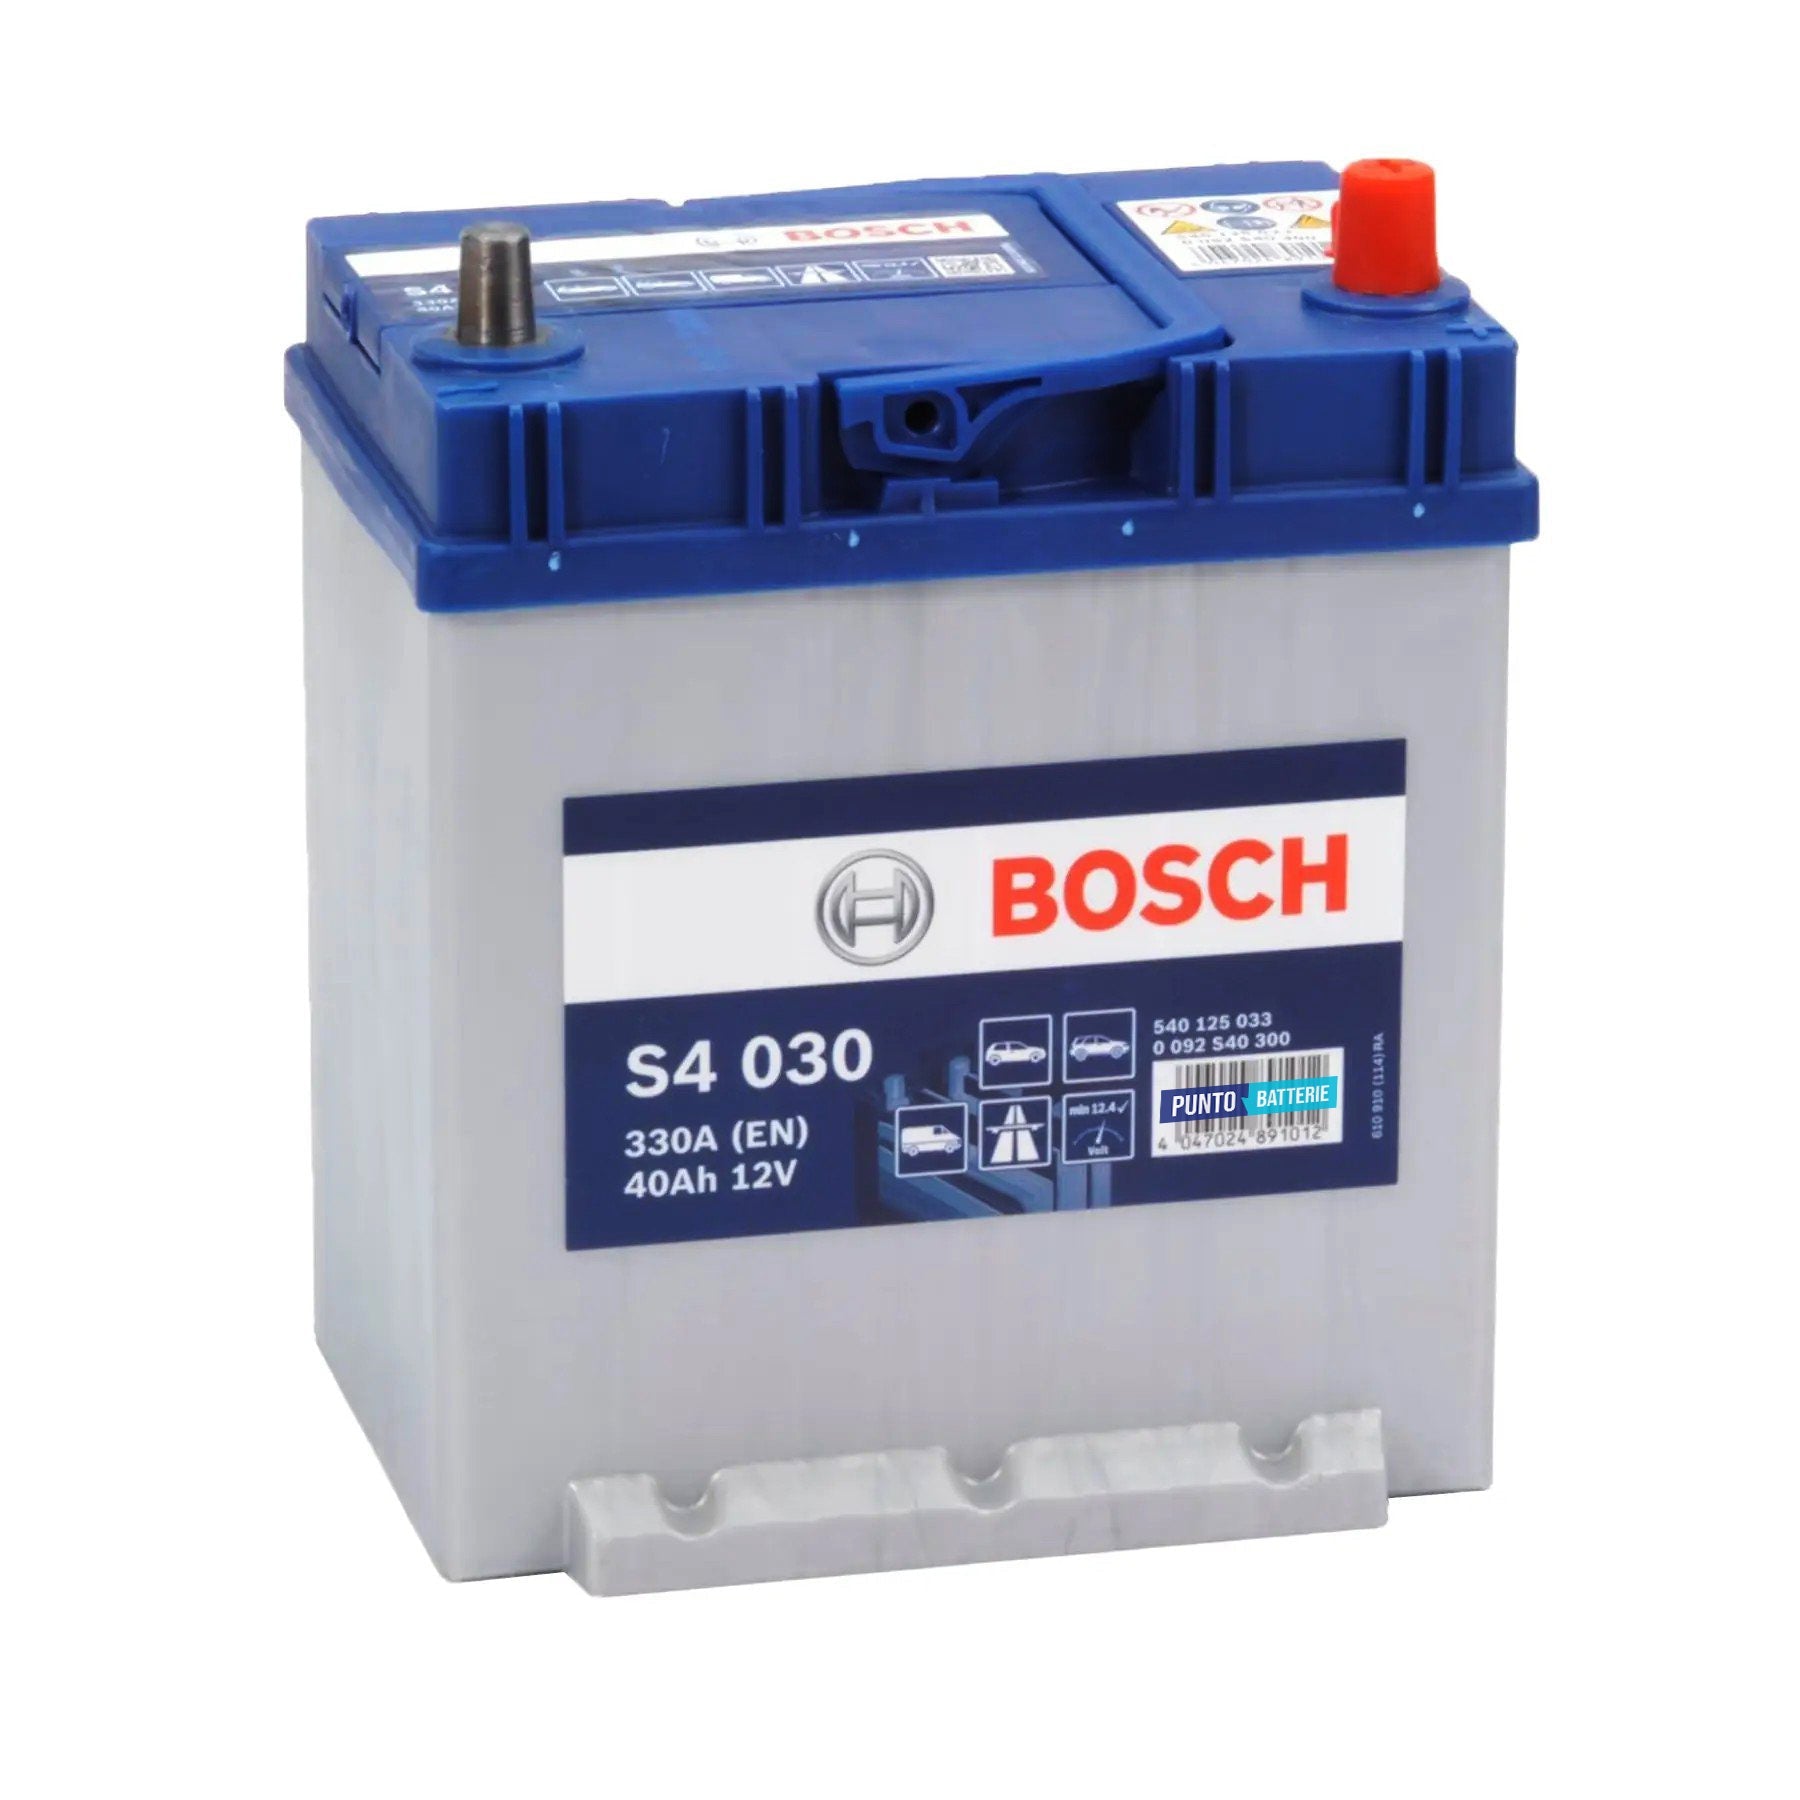 Batteria originale Bosch S4 S4 030, dimensioni 187 x 140 x 227, polo positivo a destra, 12 volt, 40 amperora, 330 ampere. Batteria per auto e veicoli leggeri.